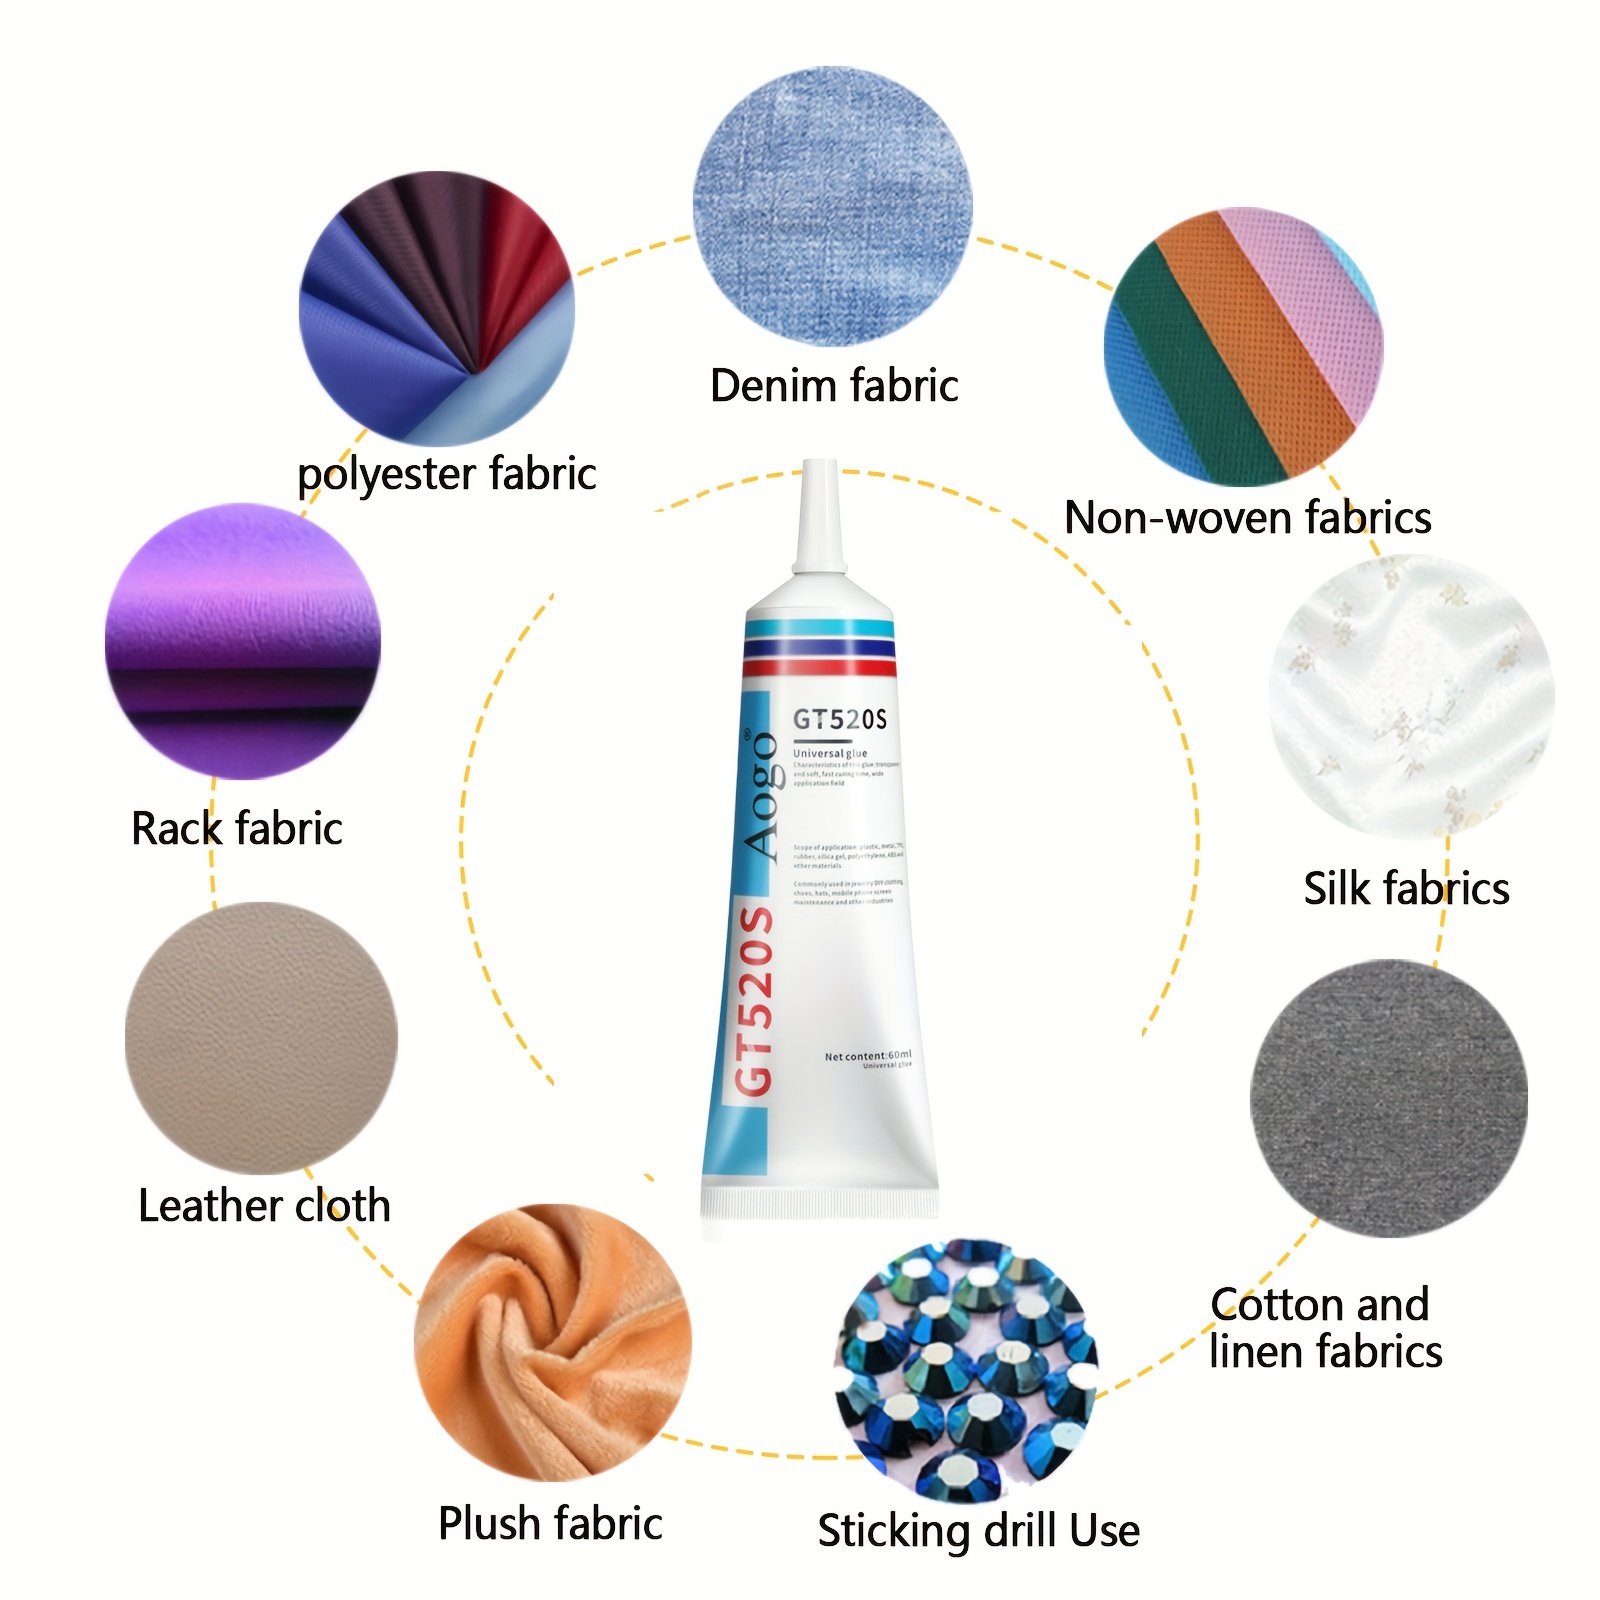 Fabric Stitch Repair Glue Clothes Special Glue Printing - Temu